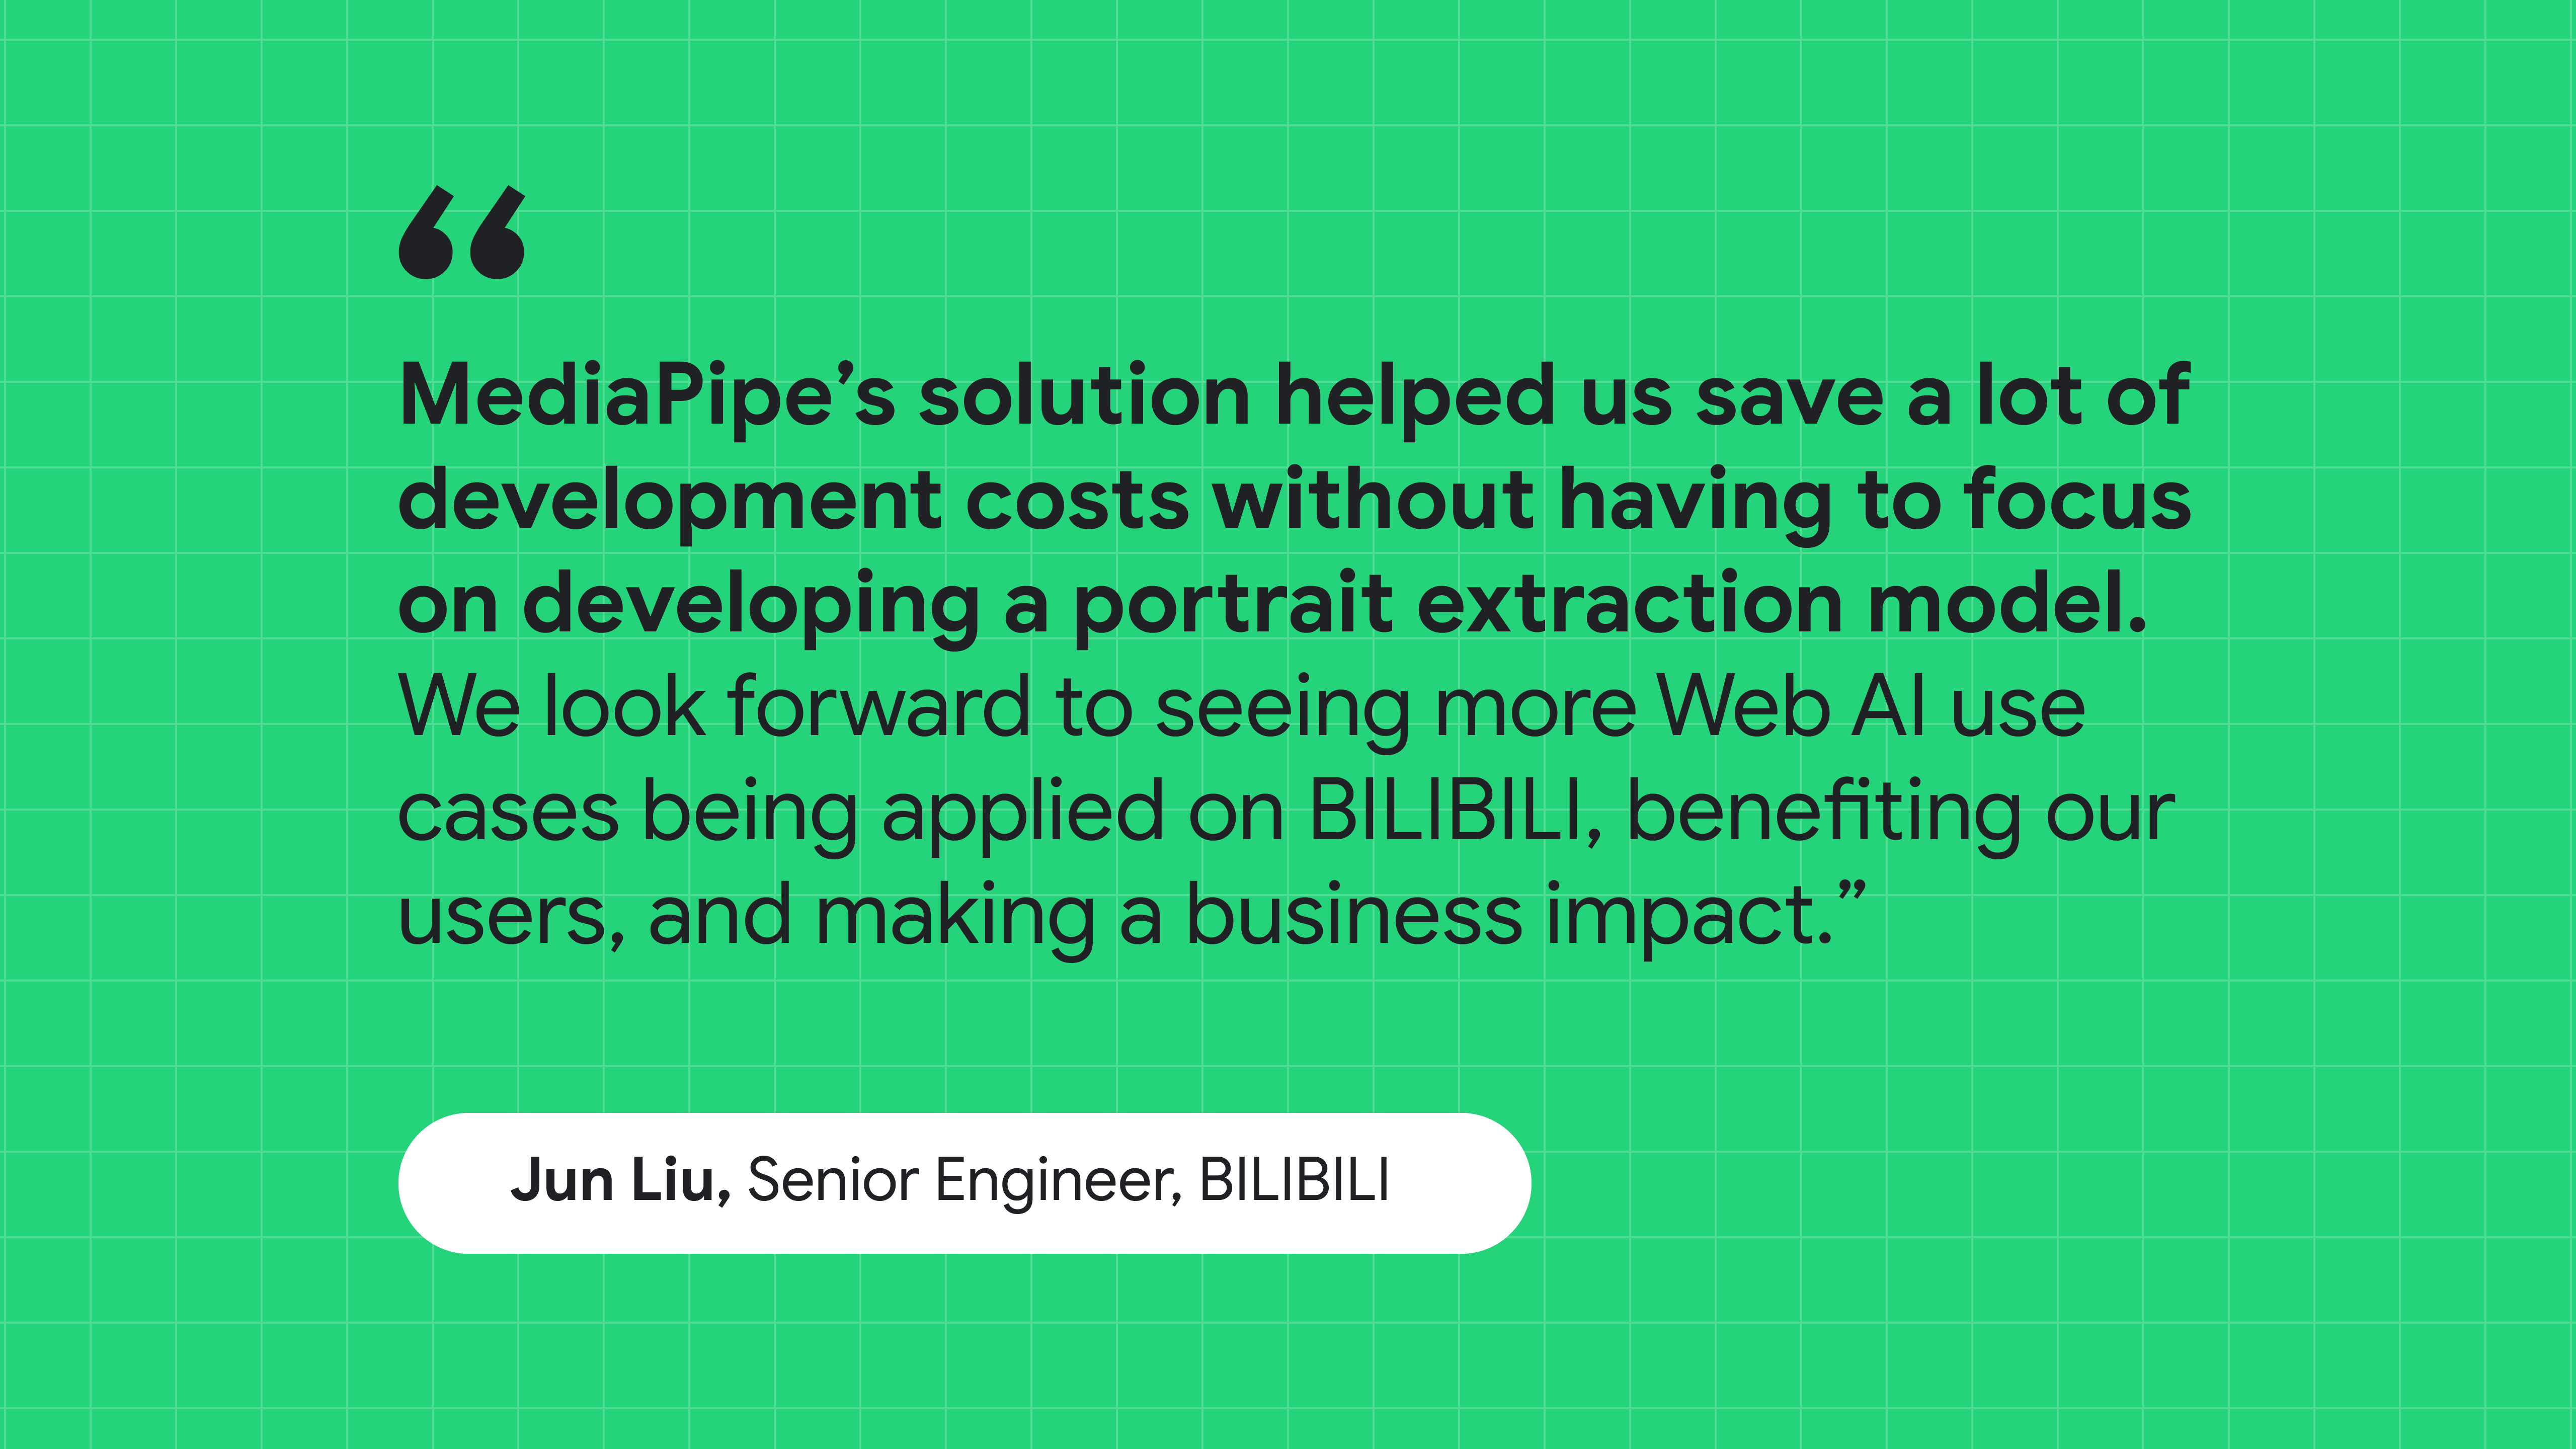 Zitat von Jun Liu, Senior Engineer bei BILIBILI: Mit der Lösung von MediaPipe konnten wir Entwicklungskosten sparen, ohne uns auf das Erstellen eines Portrait-Extraktionsmodells zu konzentrieren.